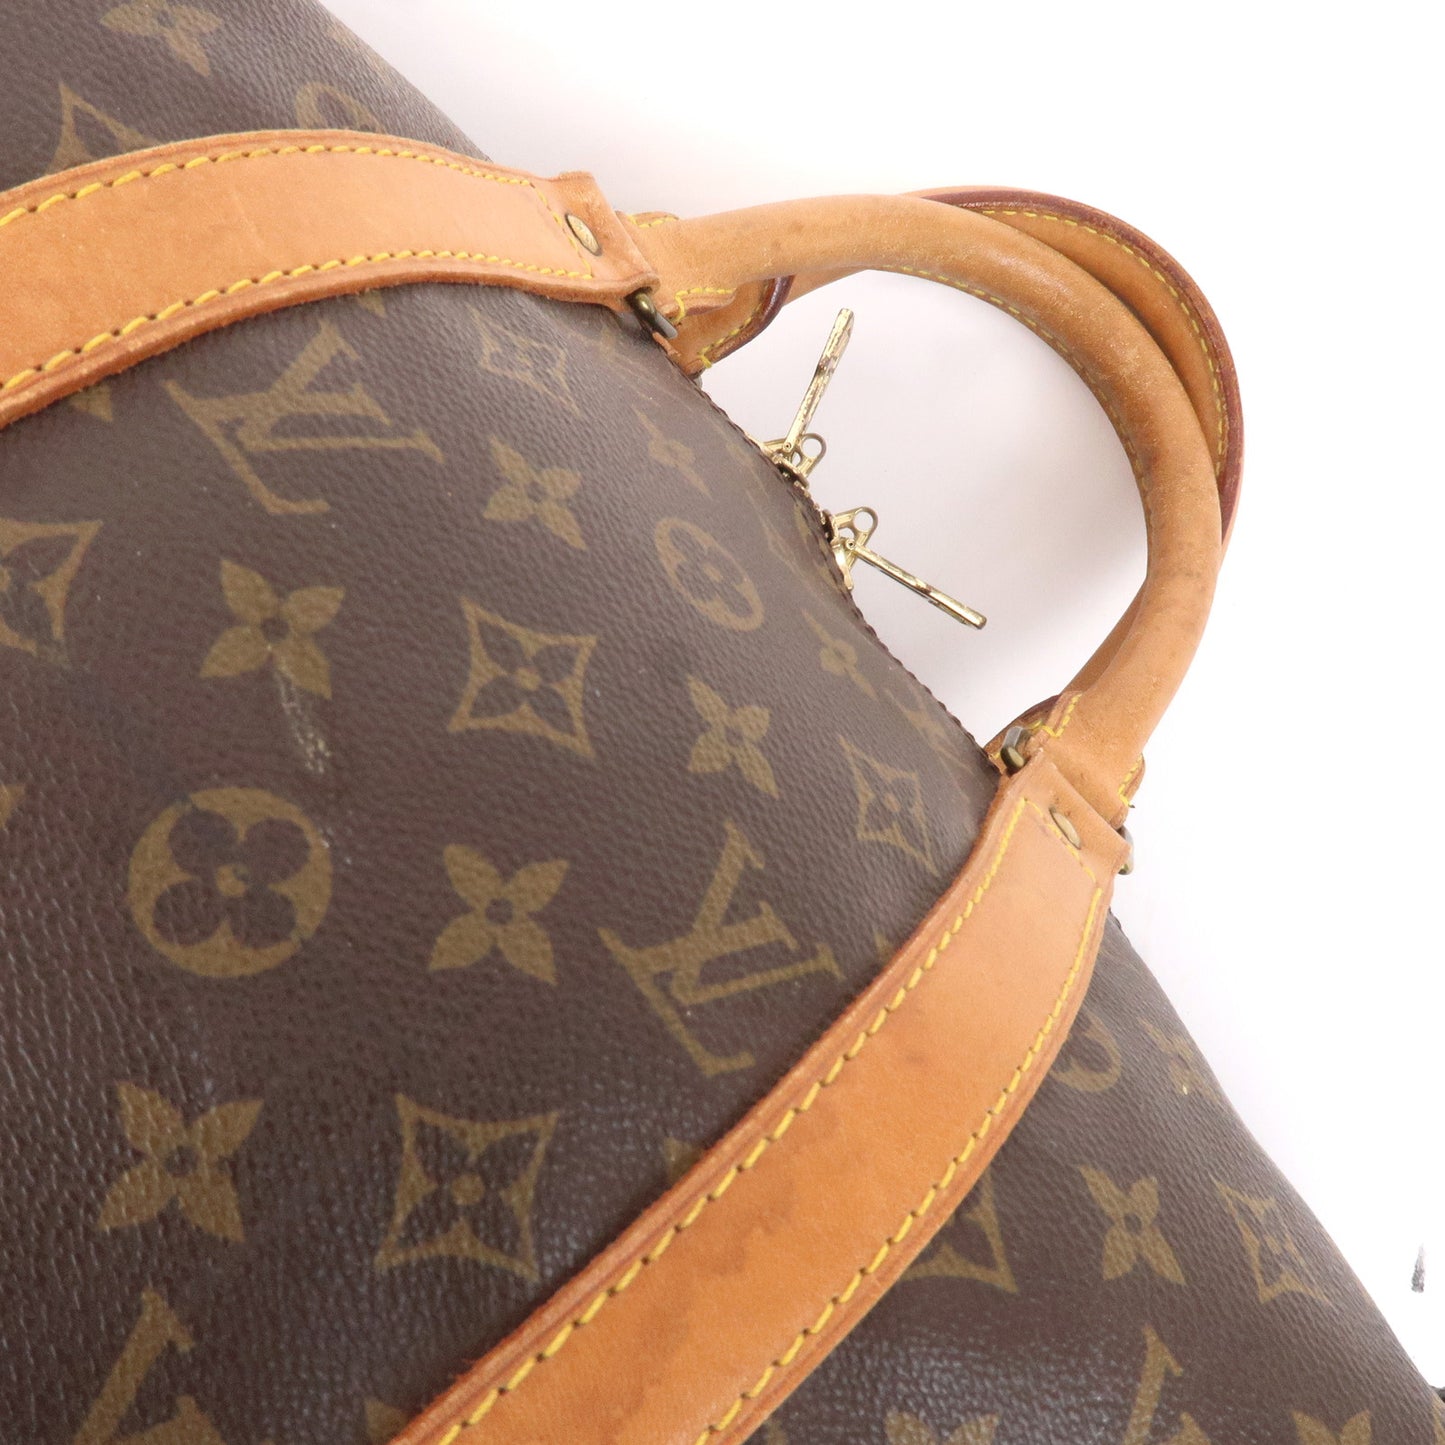 Louis Vuitton Monogram Keep All 50 Bag Brown M41426